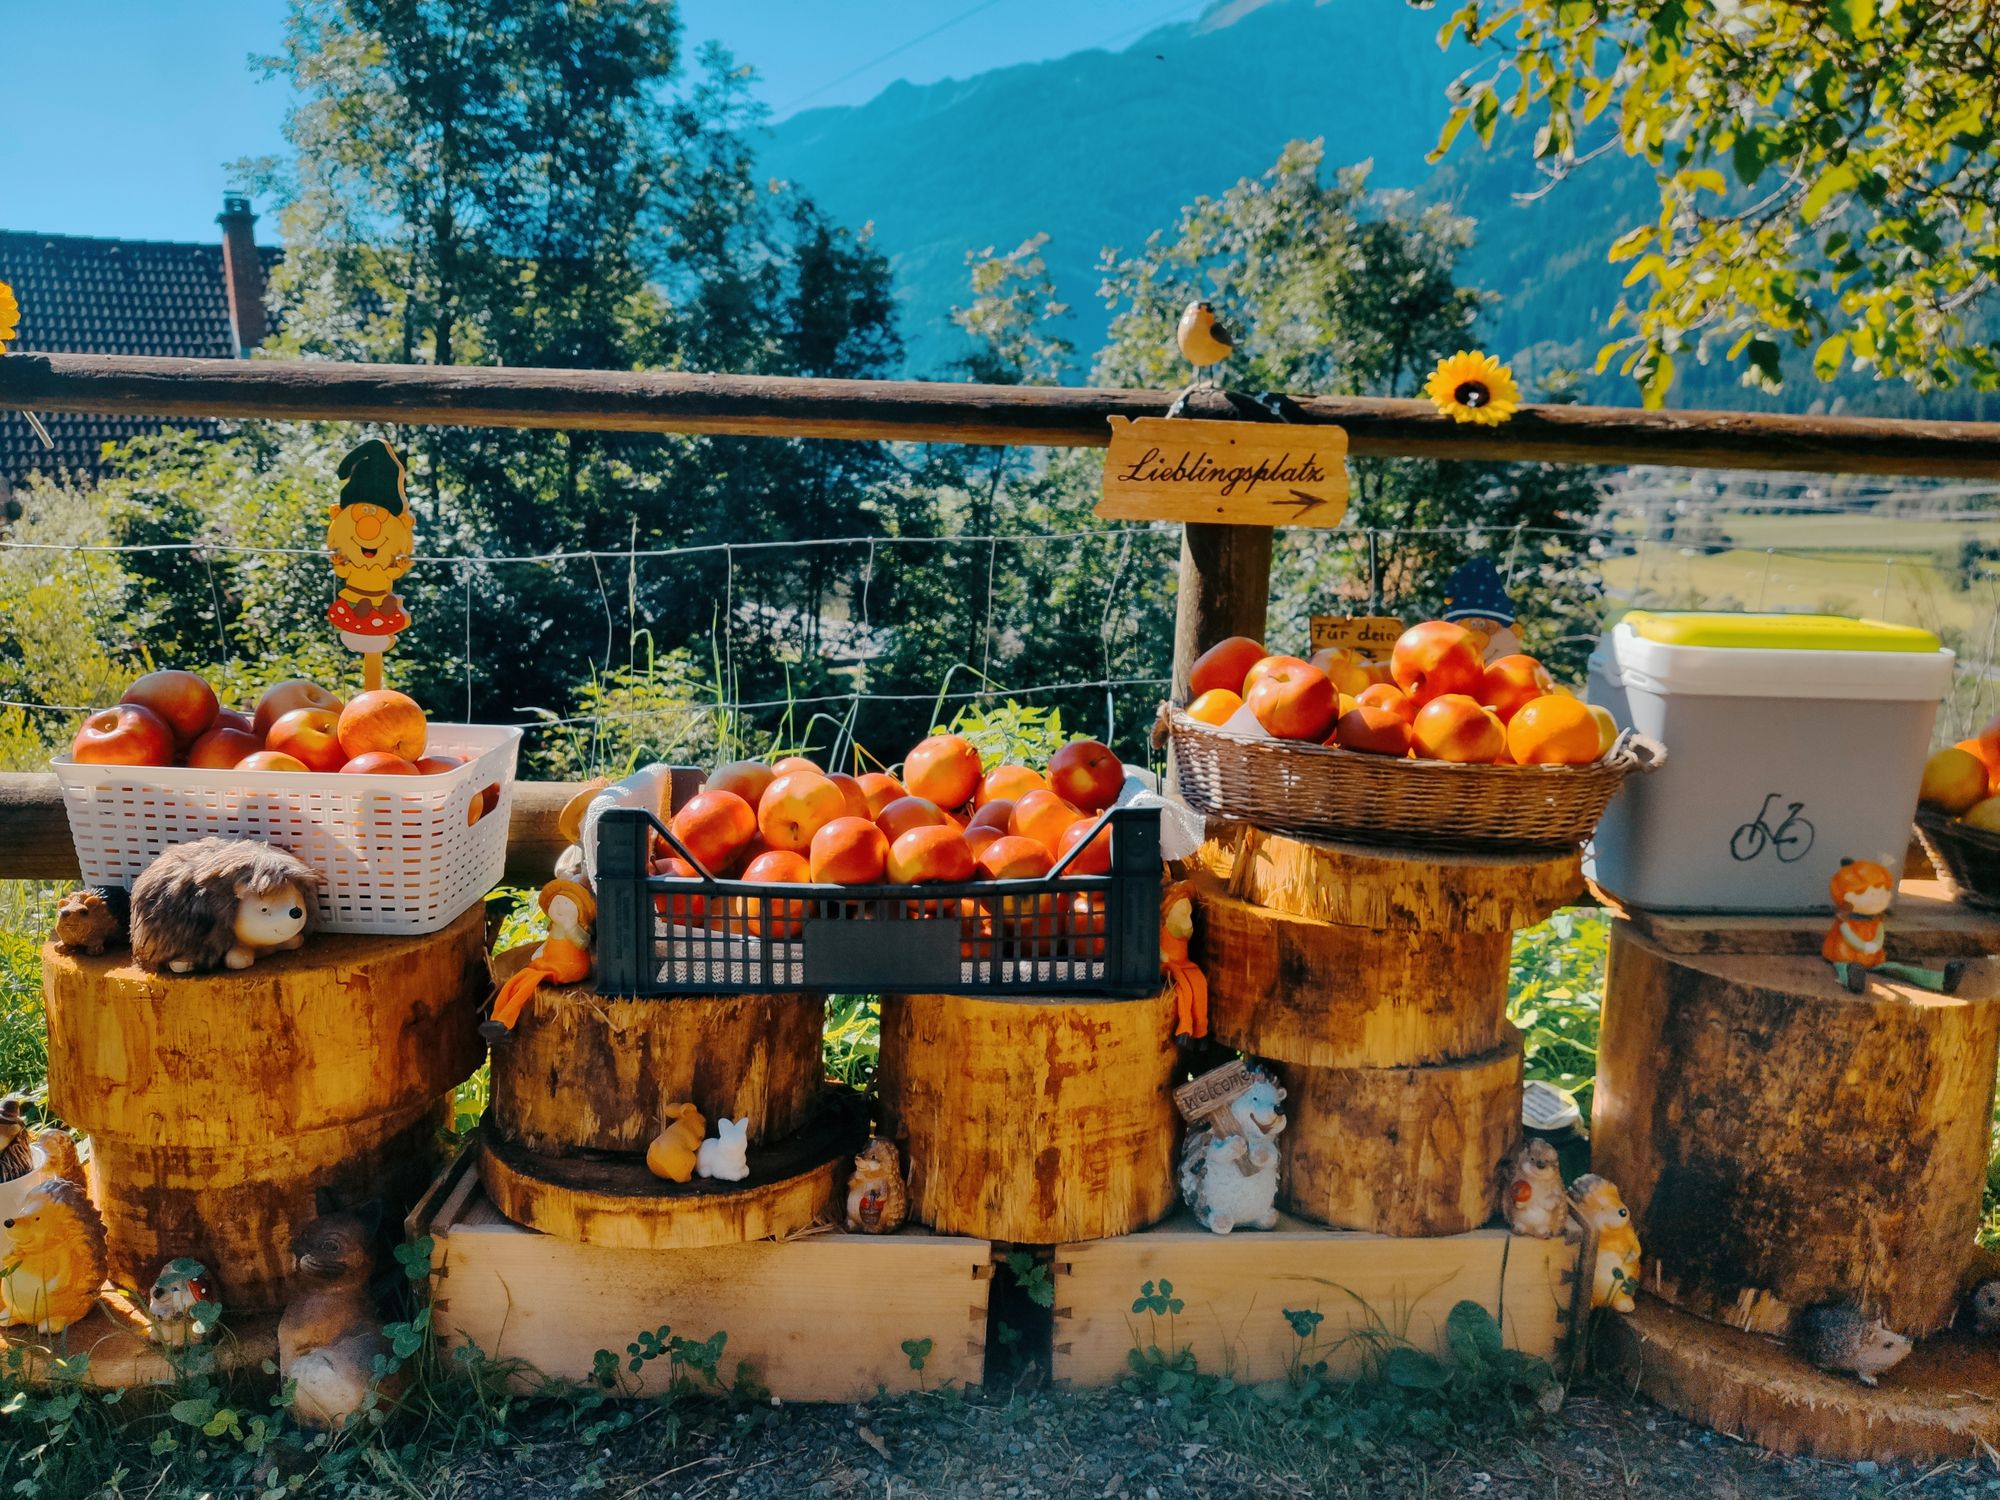 Owoce przygotowane dla rowerzystów podróżujących Alpe Adria przez lokalną społeczność